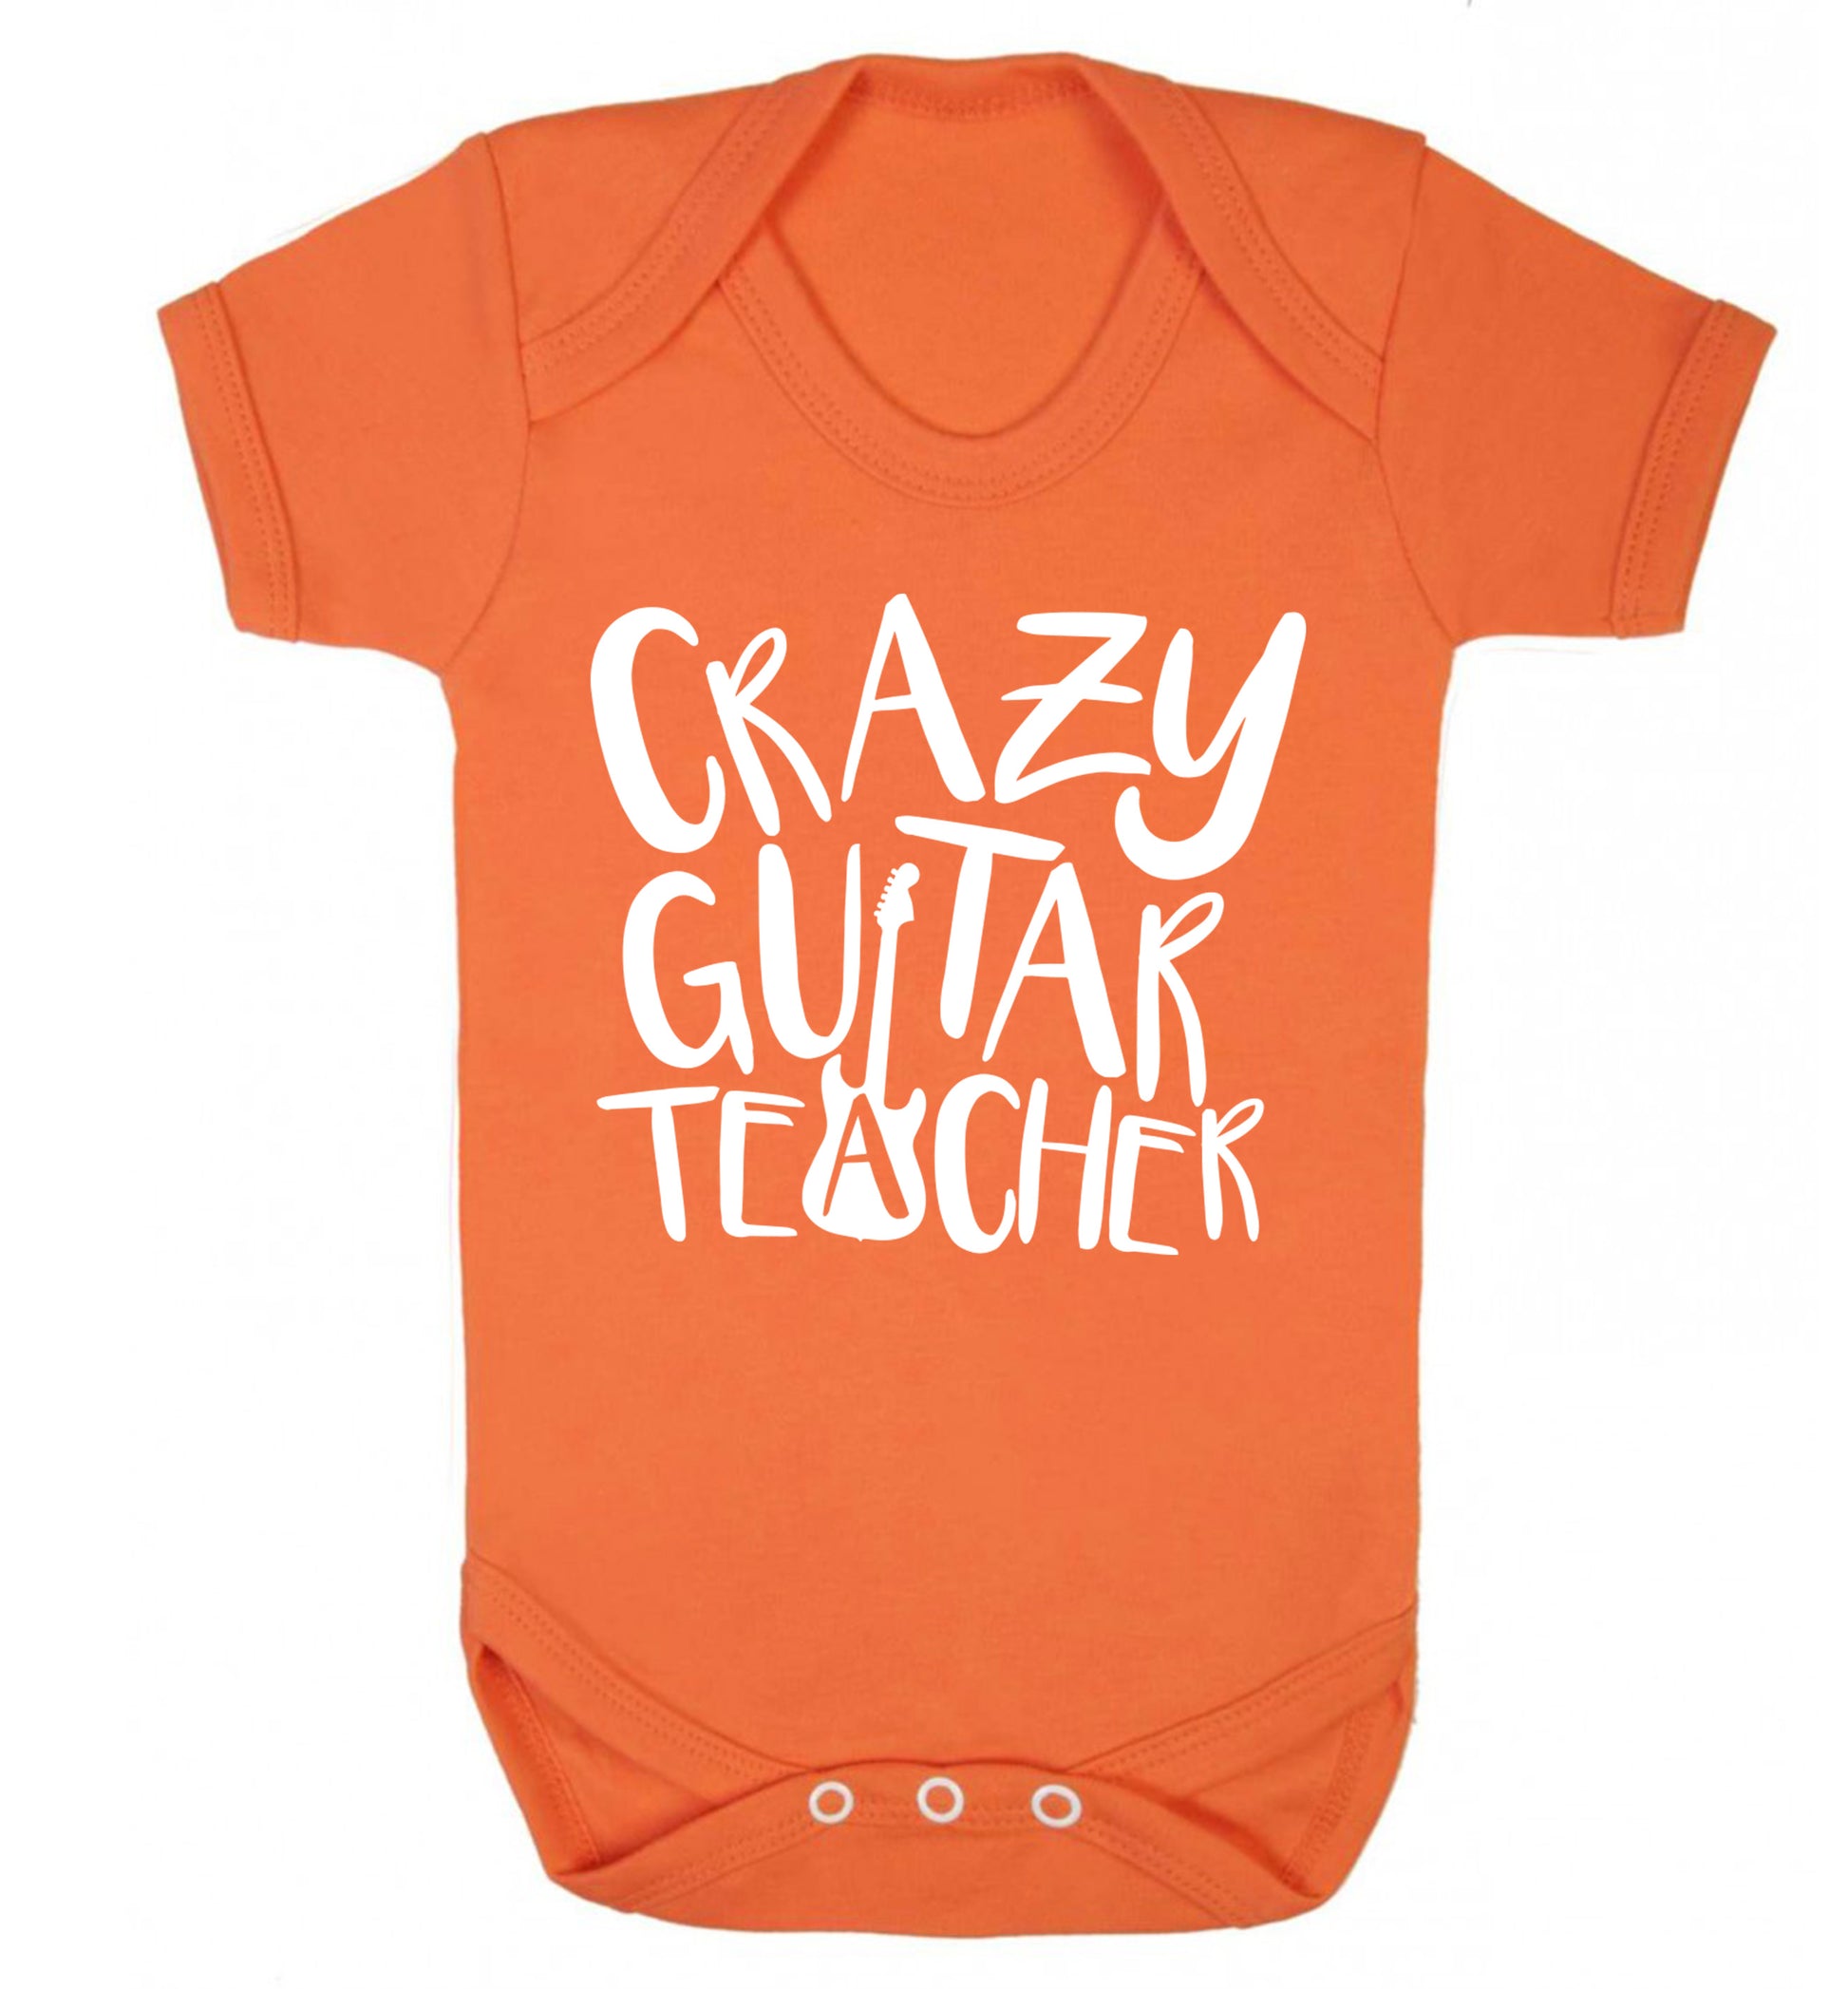 Crazy guitar teacher Baby Vest orange 18-24 months